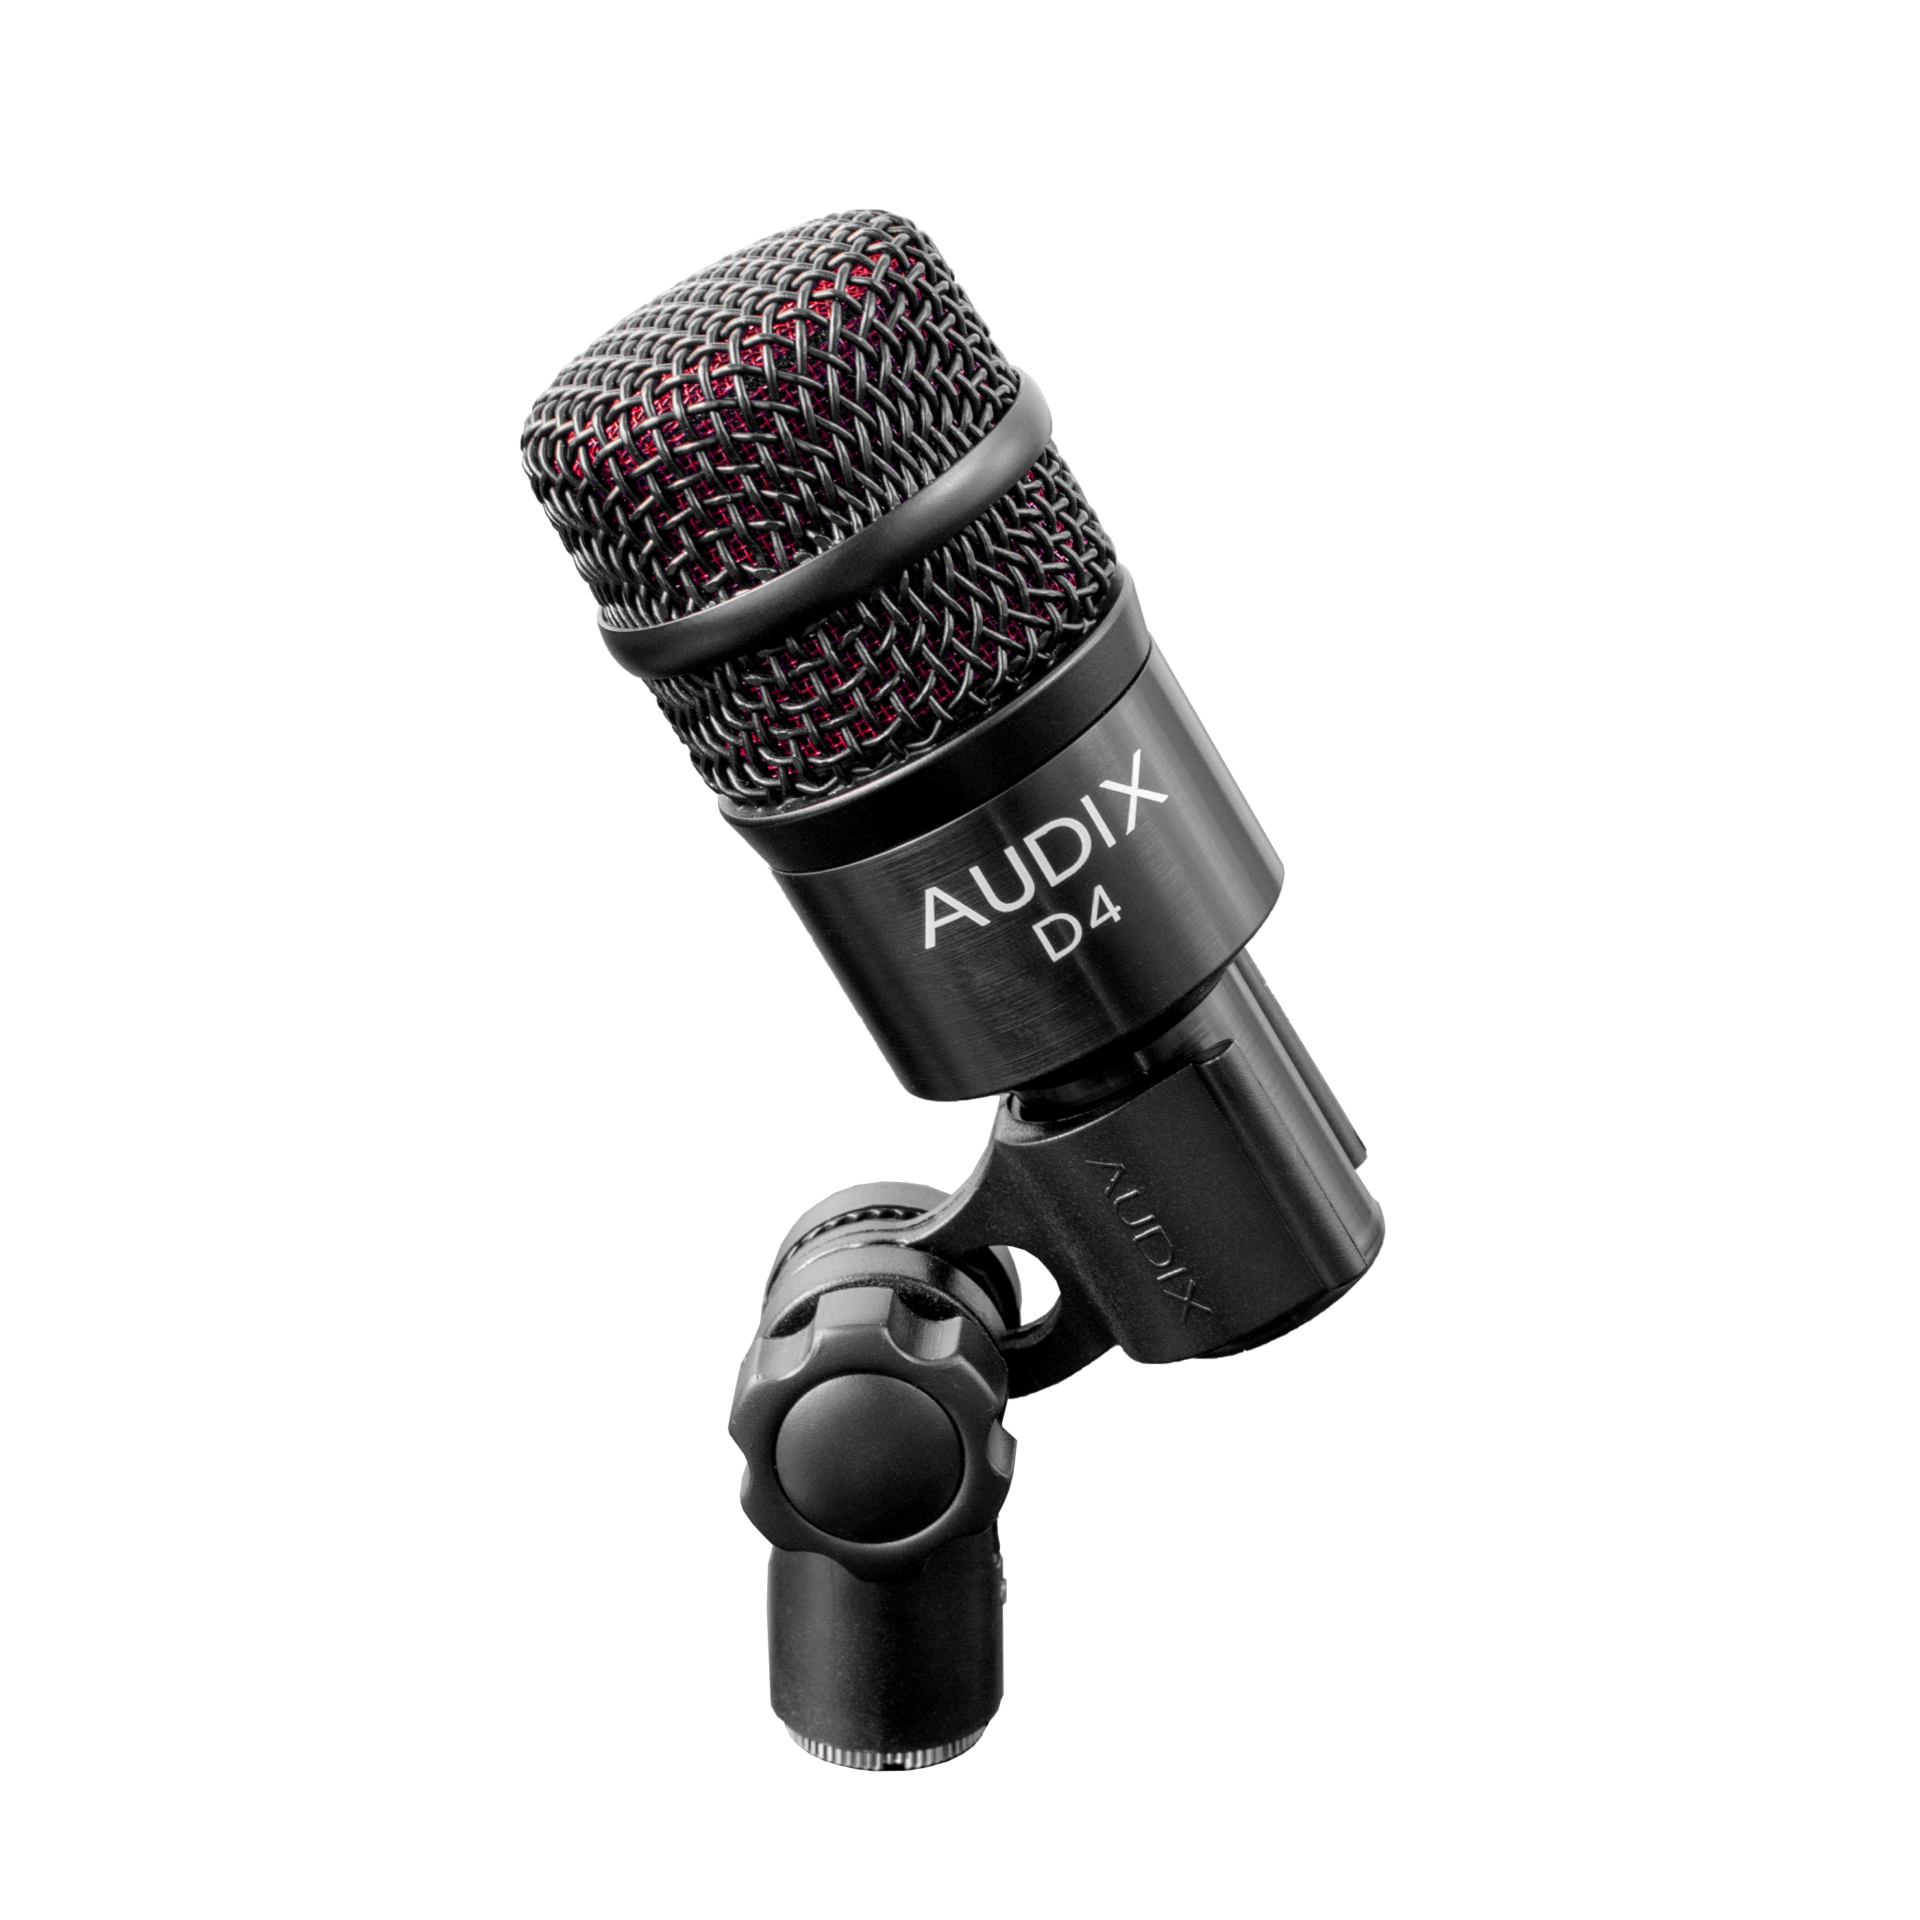 AUDIX D4 professionell dynamisk hyperkardioid mikrofon